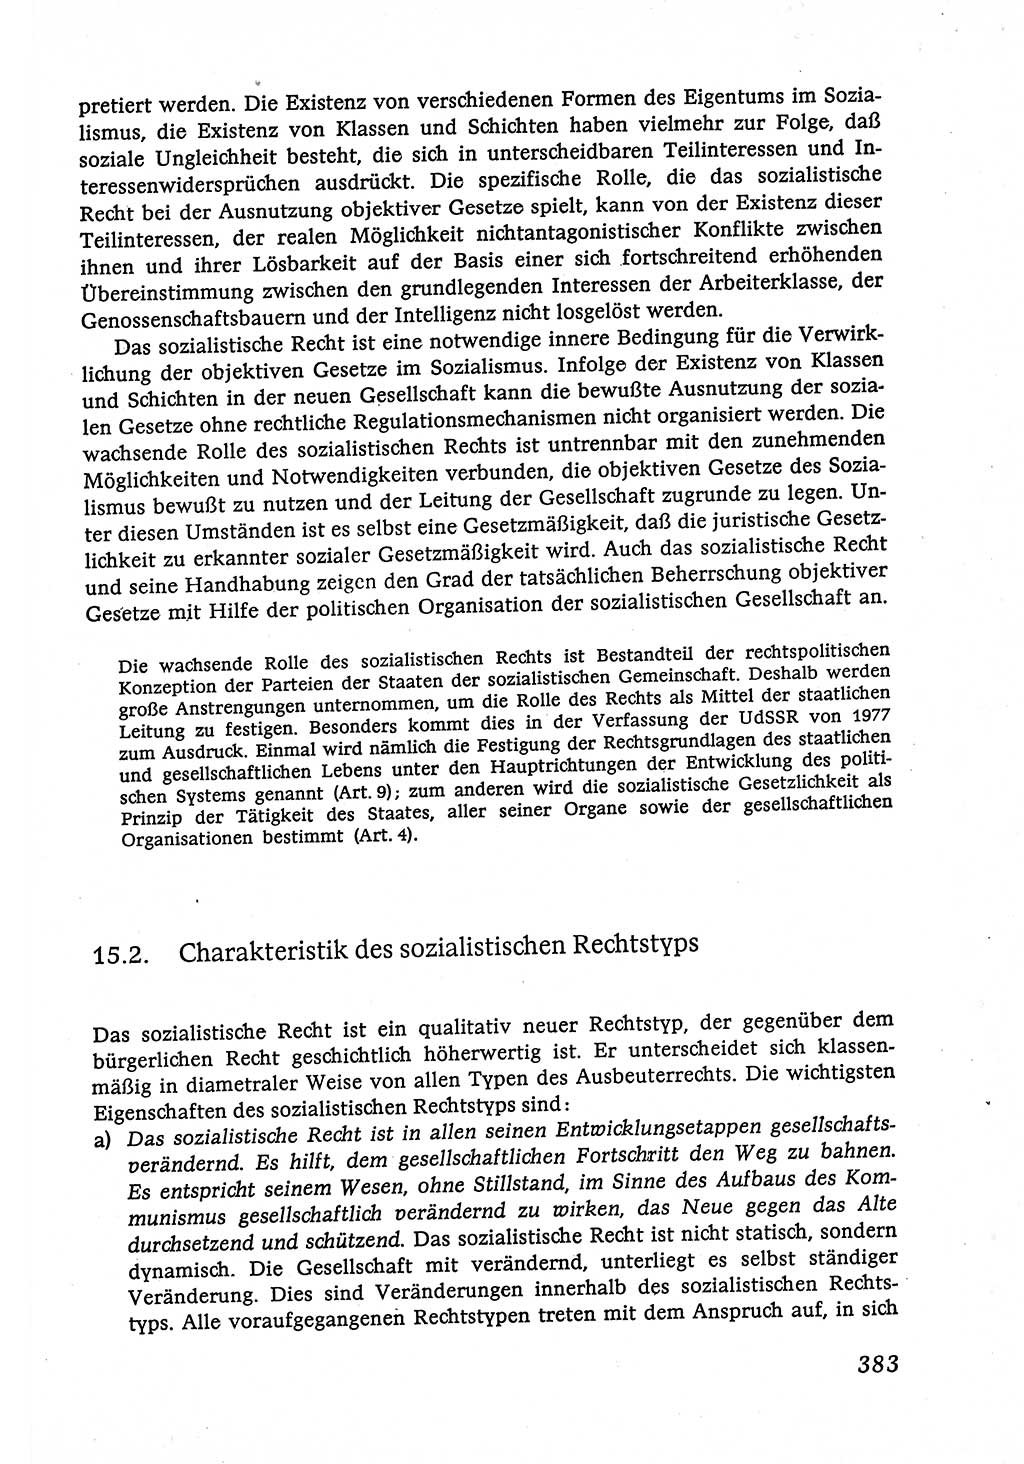 Marxistisch-leninistische (ML) Staats- und Rechtstheorie [Deutsche Demokratische Republik (DDR)], Lehrbuch 1980, Seite 383 (ML St.-R.-Th. DDR Lb. 1980, S. 383)